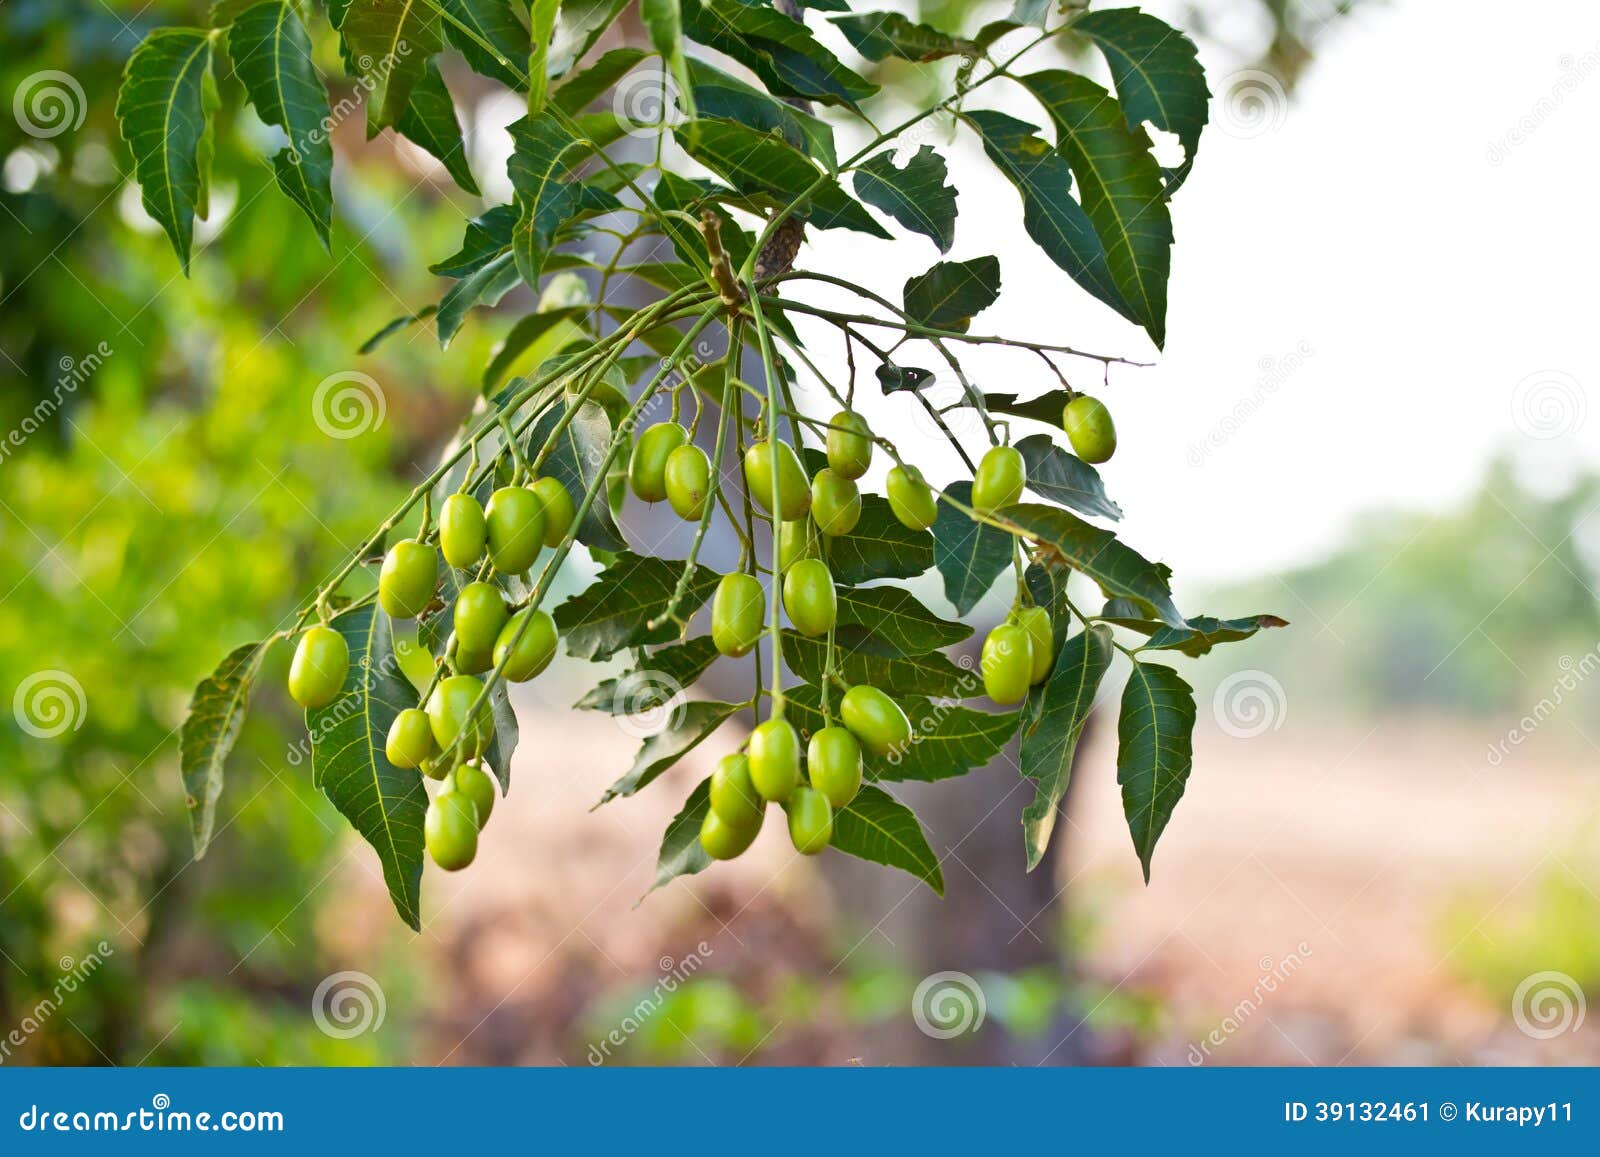 neem seed-azadirachta indica